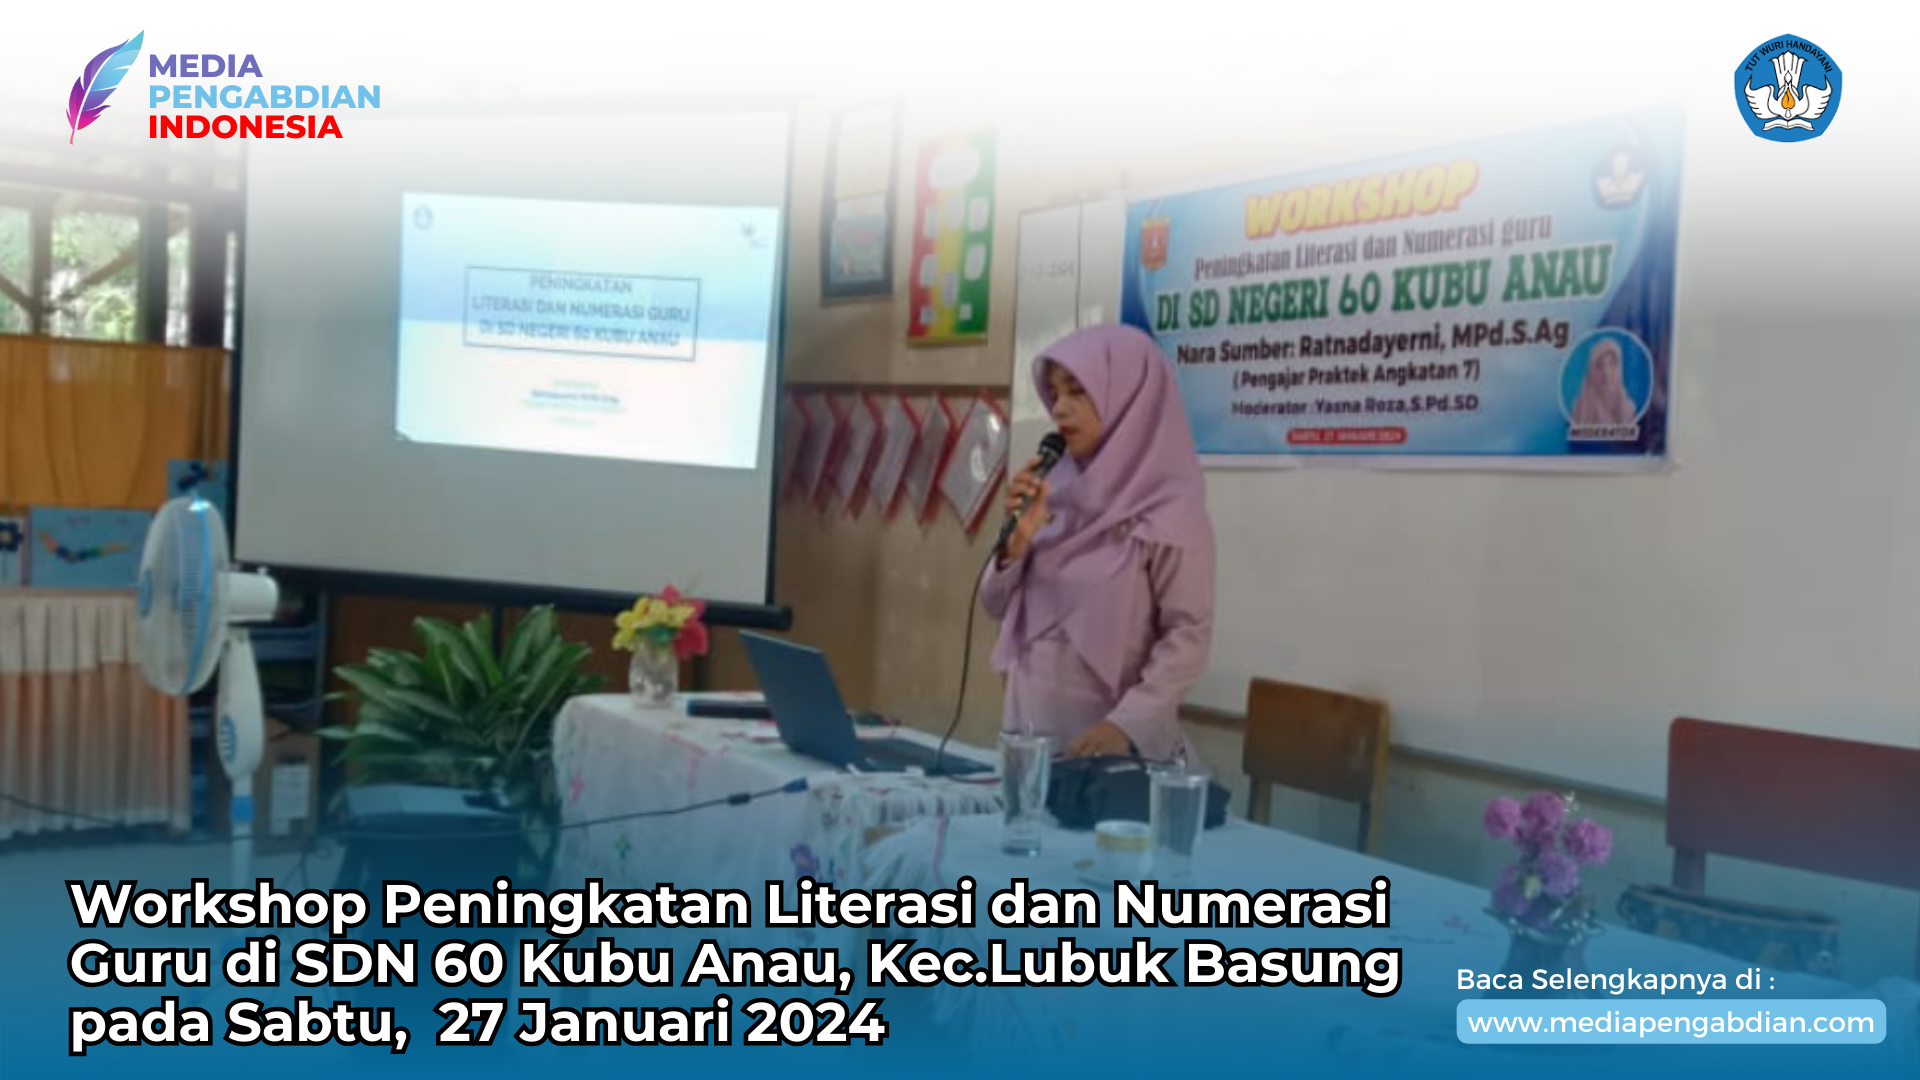 Acara Workshop Peningkatan Literasi dan Numerasi Guru di SDN 60 Kubu Anau